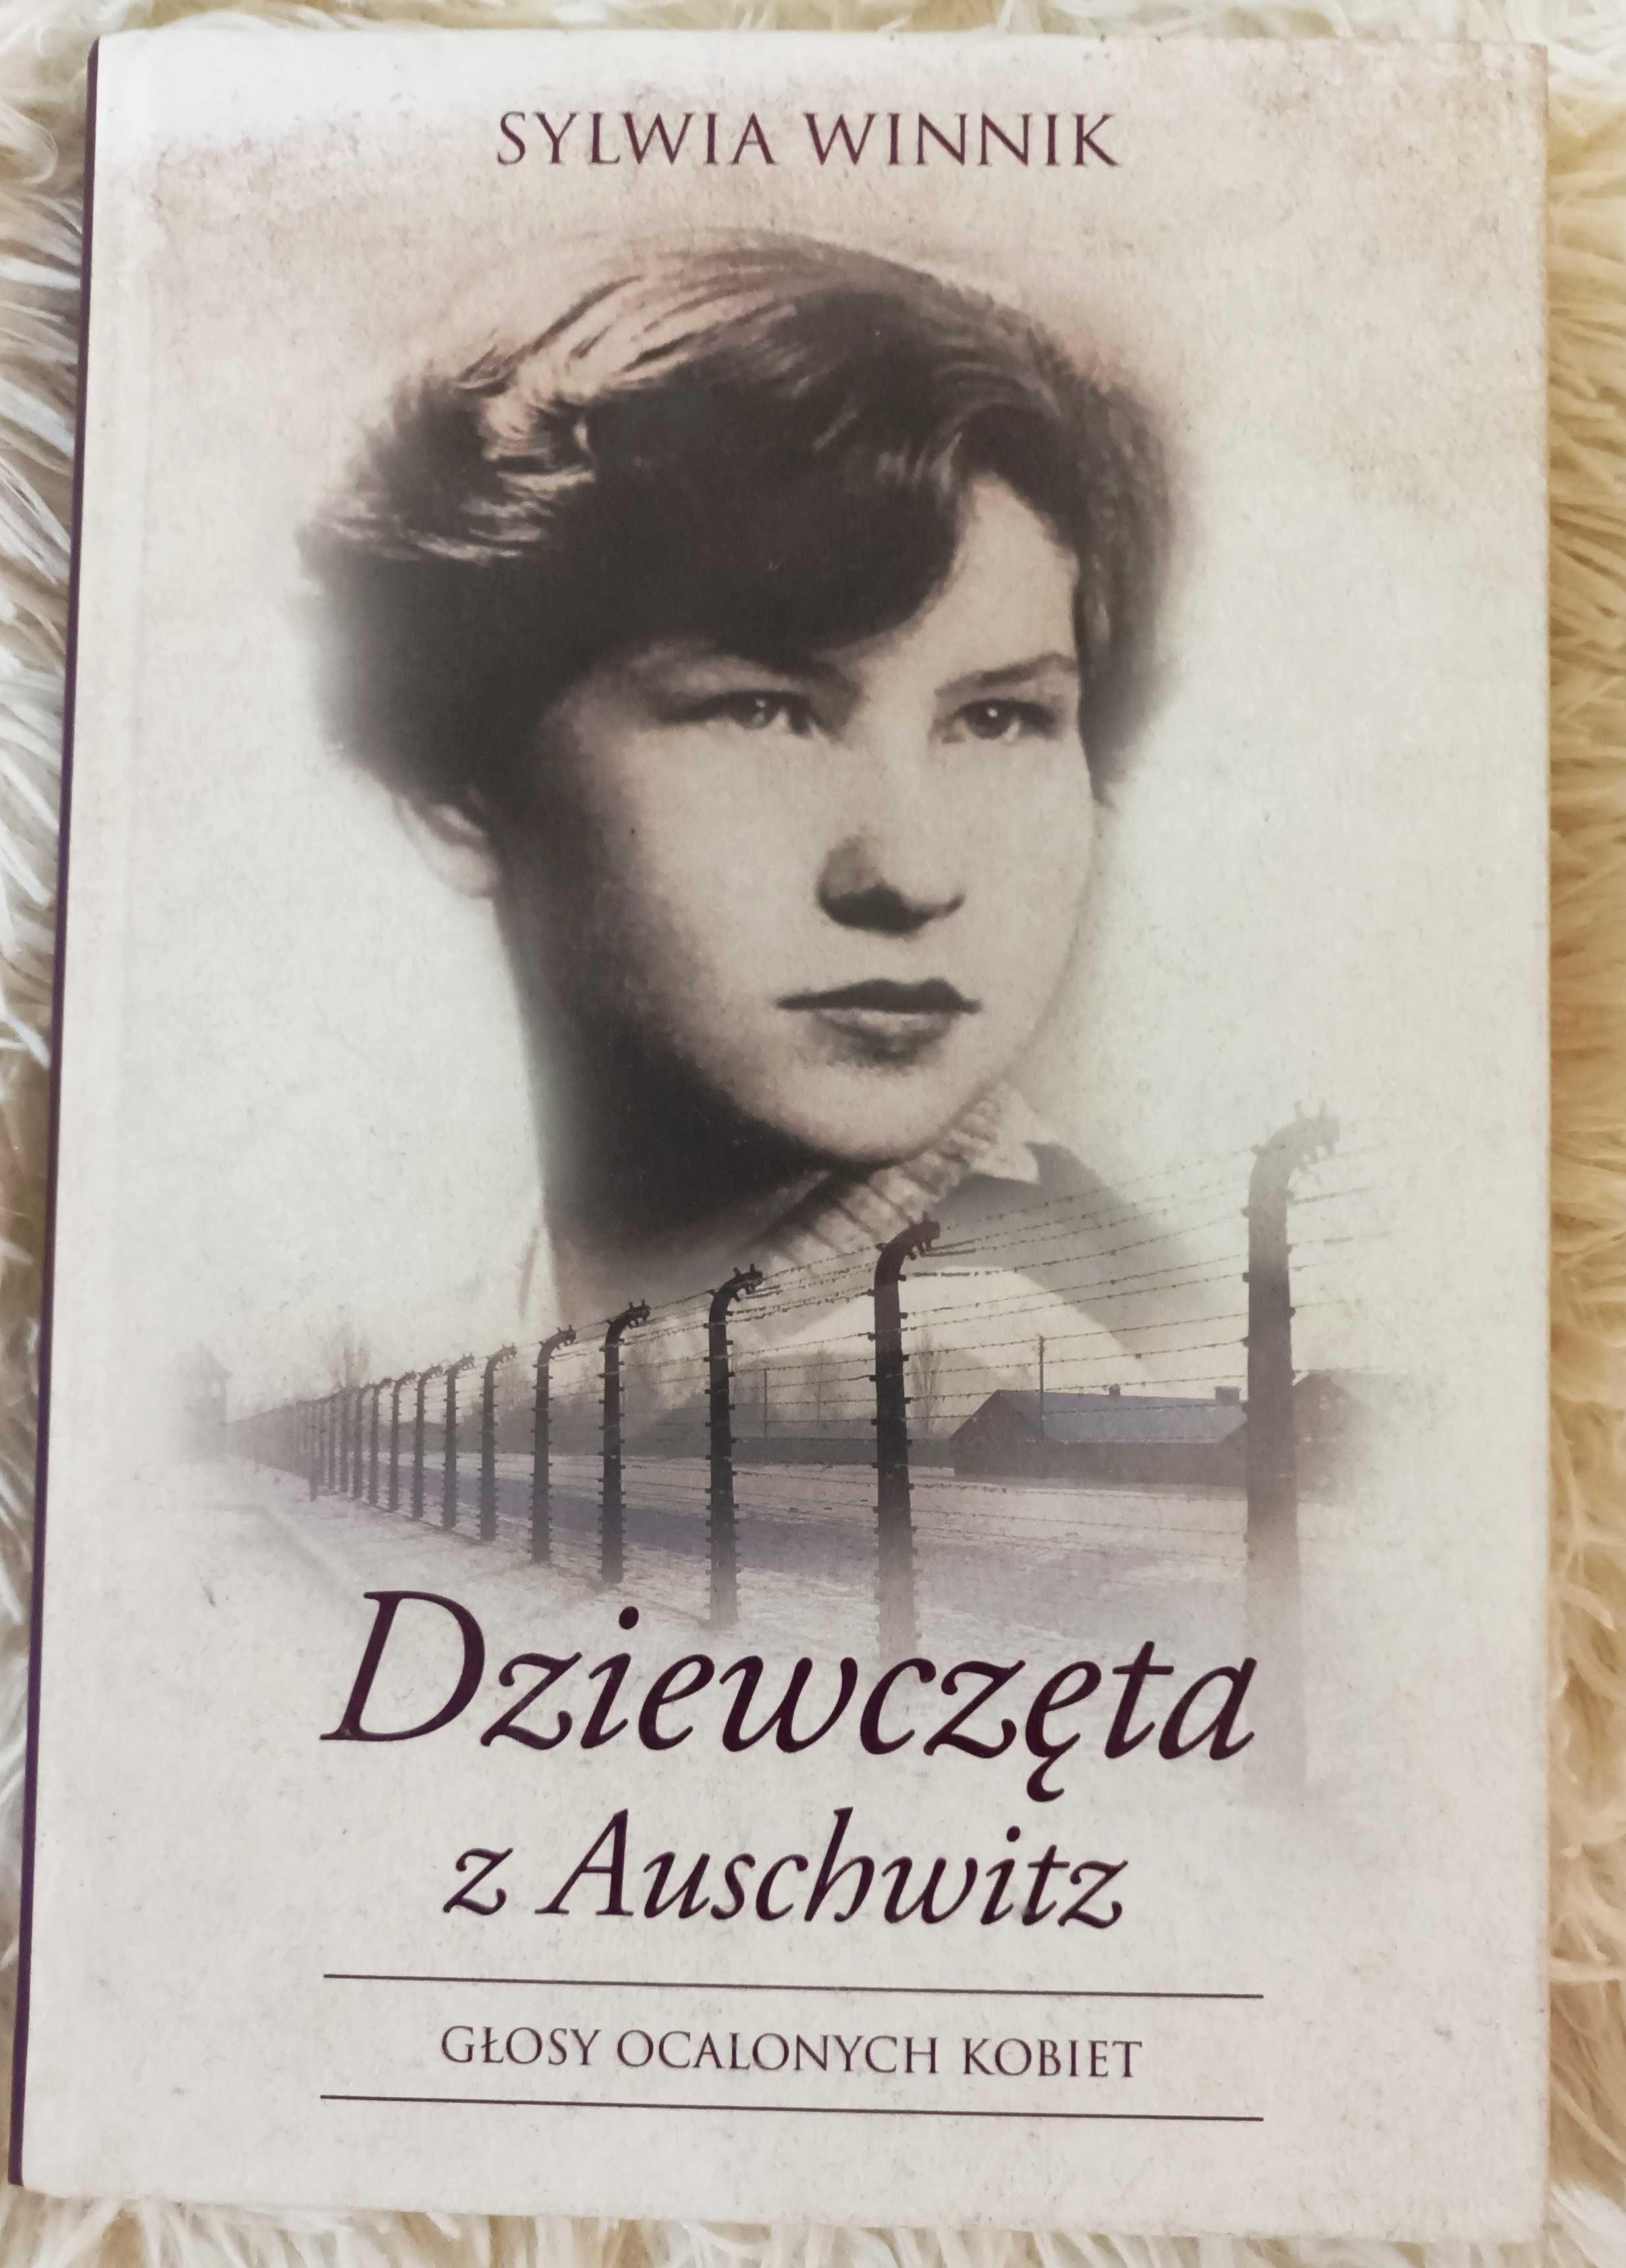 Książka "Dzieciństwo w pasiakach" i "Dziewczęta z Auschwitz"